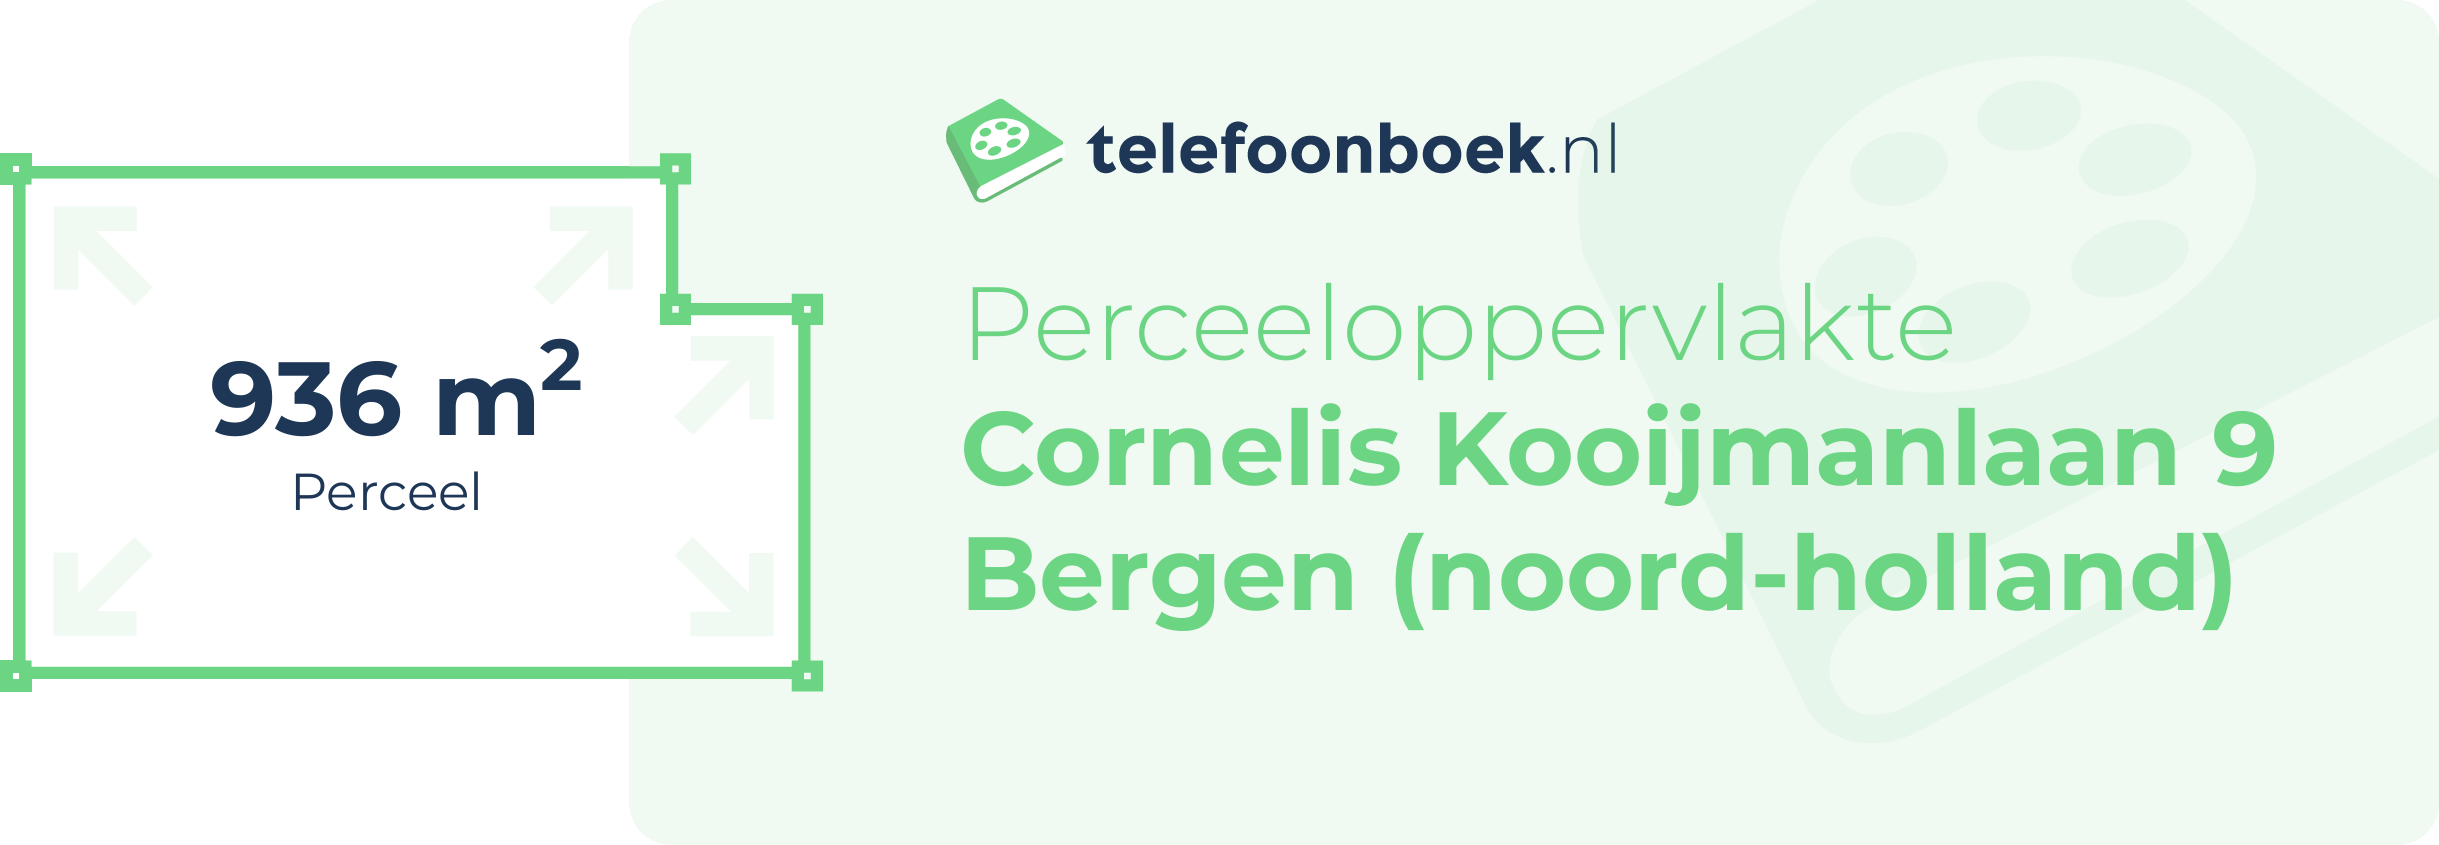 Perceeloppervlakte Cornelis Kooijmanlaan 9 Bergen (Noord-Holland)